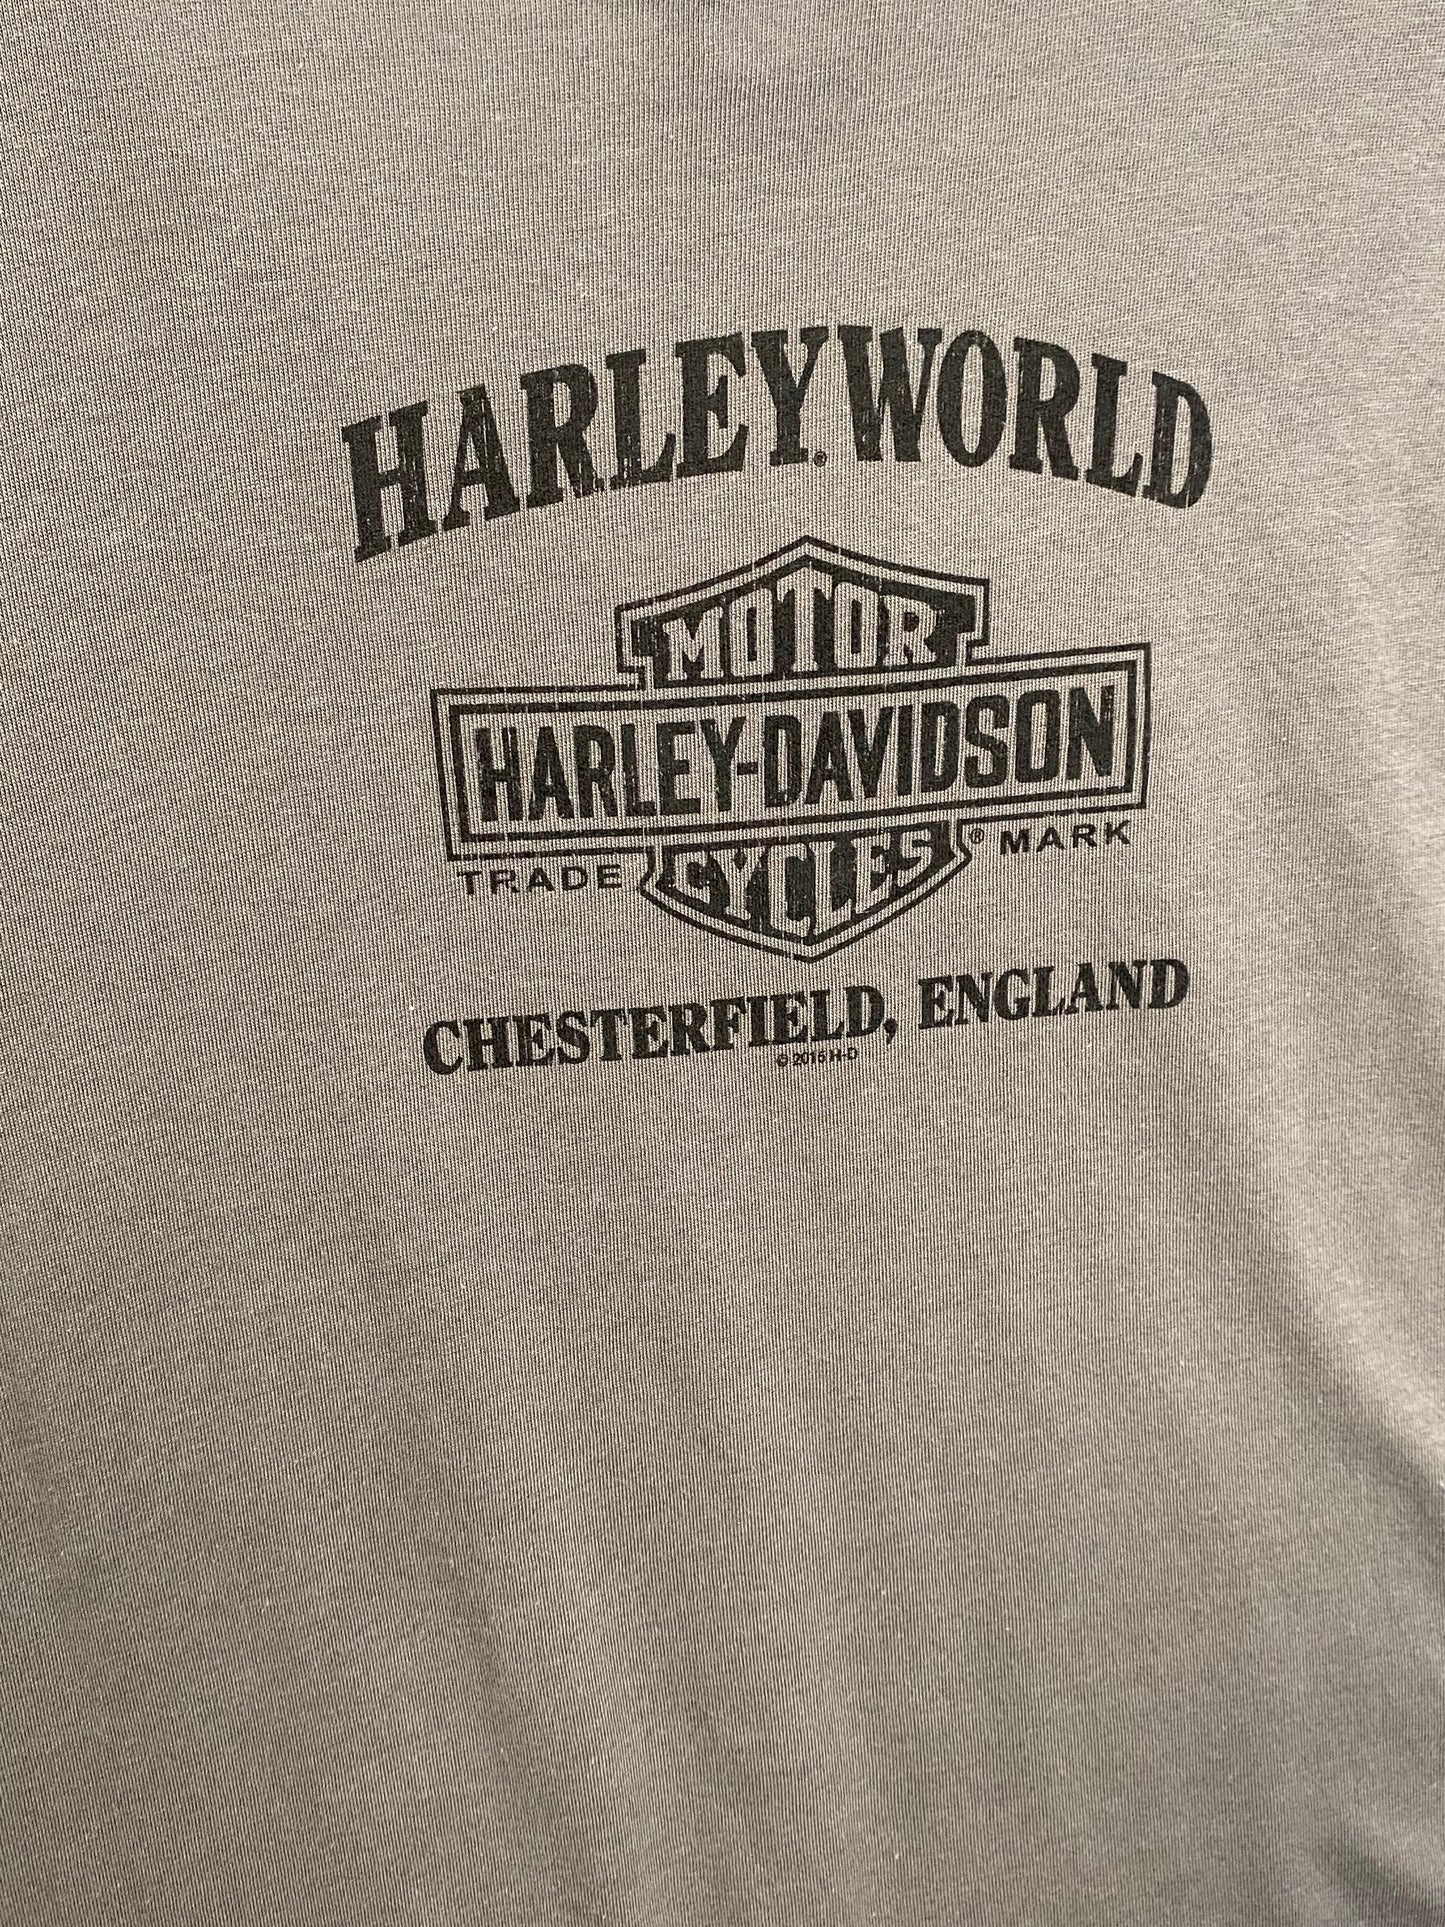 Harley Davidson Ladies Scattered Dealer T-Shirt